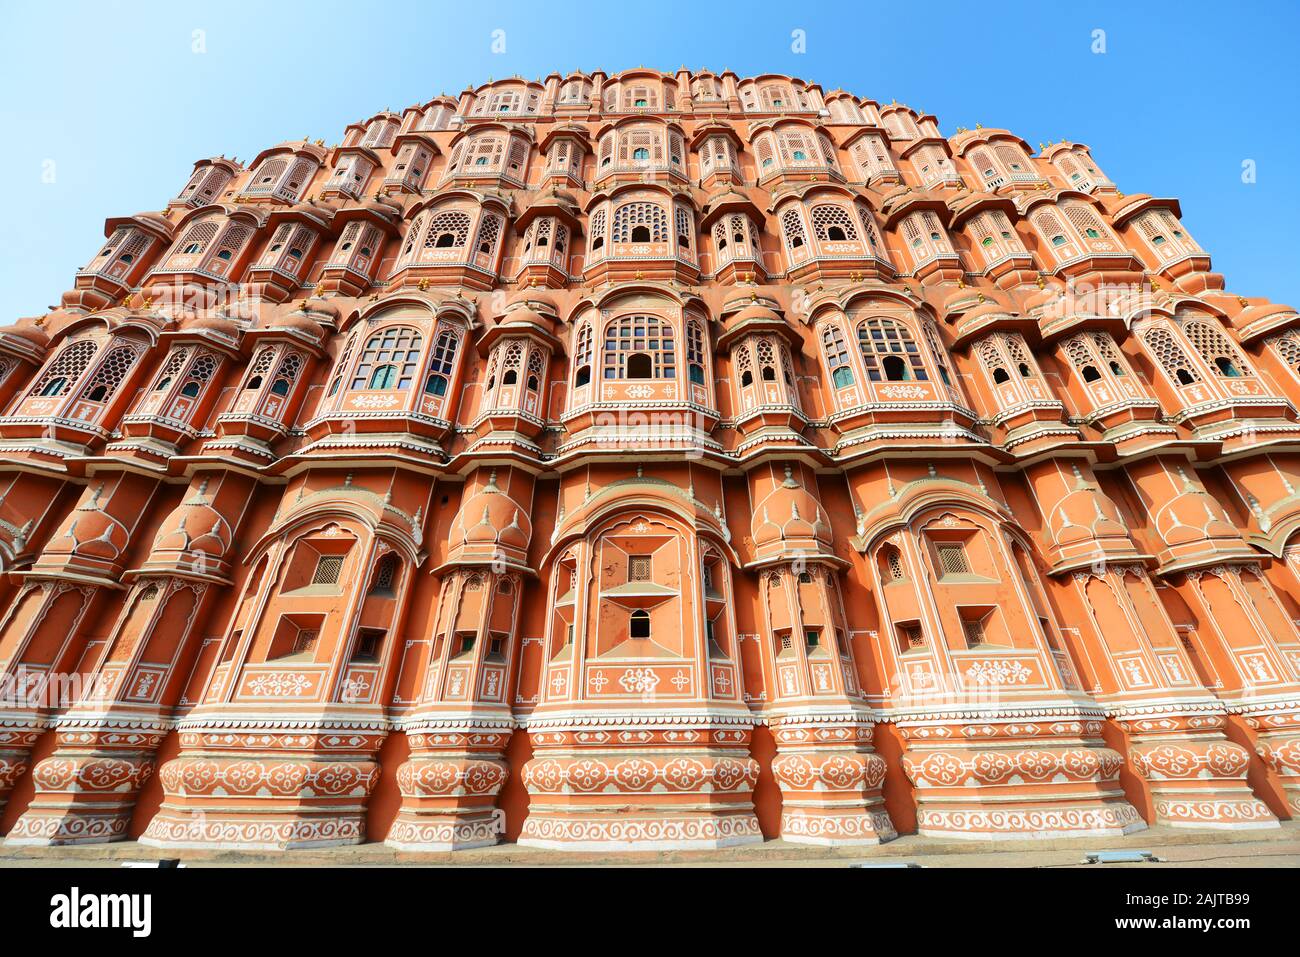 Le symbole Hawa Mahal ( Palais des vents ) à Jaipur, en Inde. Banque D'Images